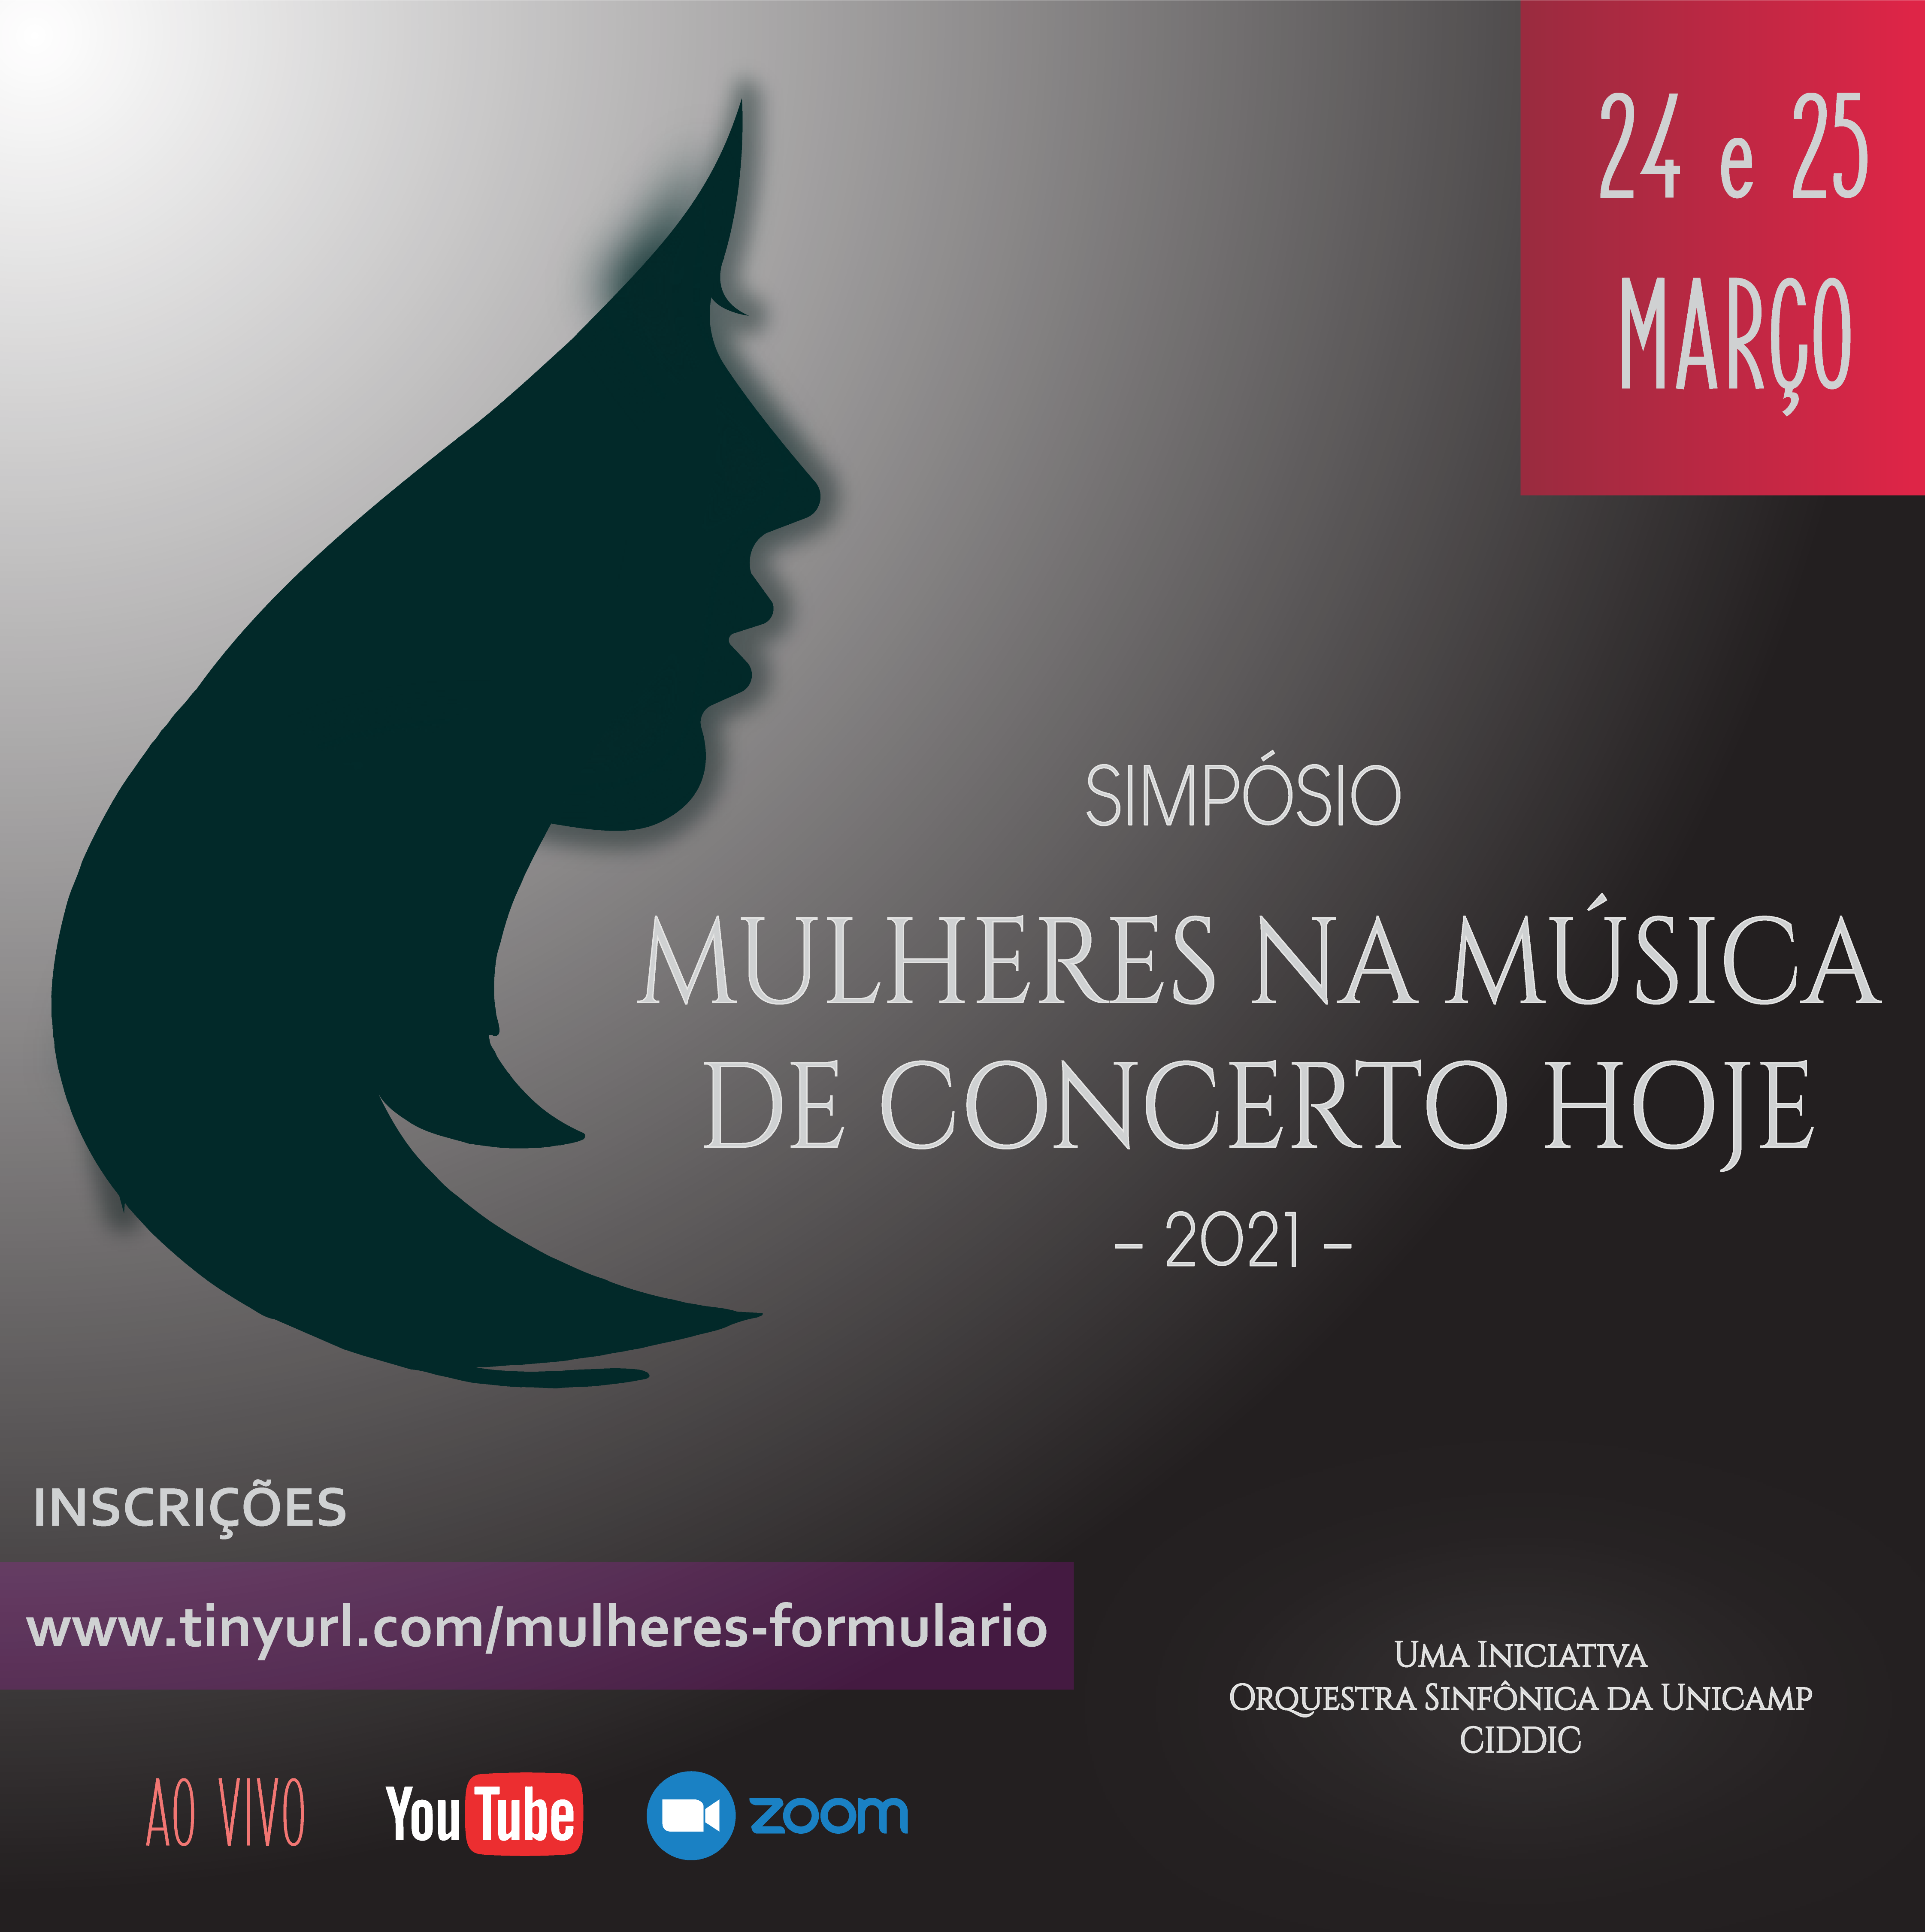 Viva as compositoras que deram voz à mulher na música popular do Brasil